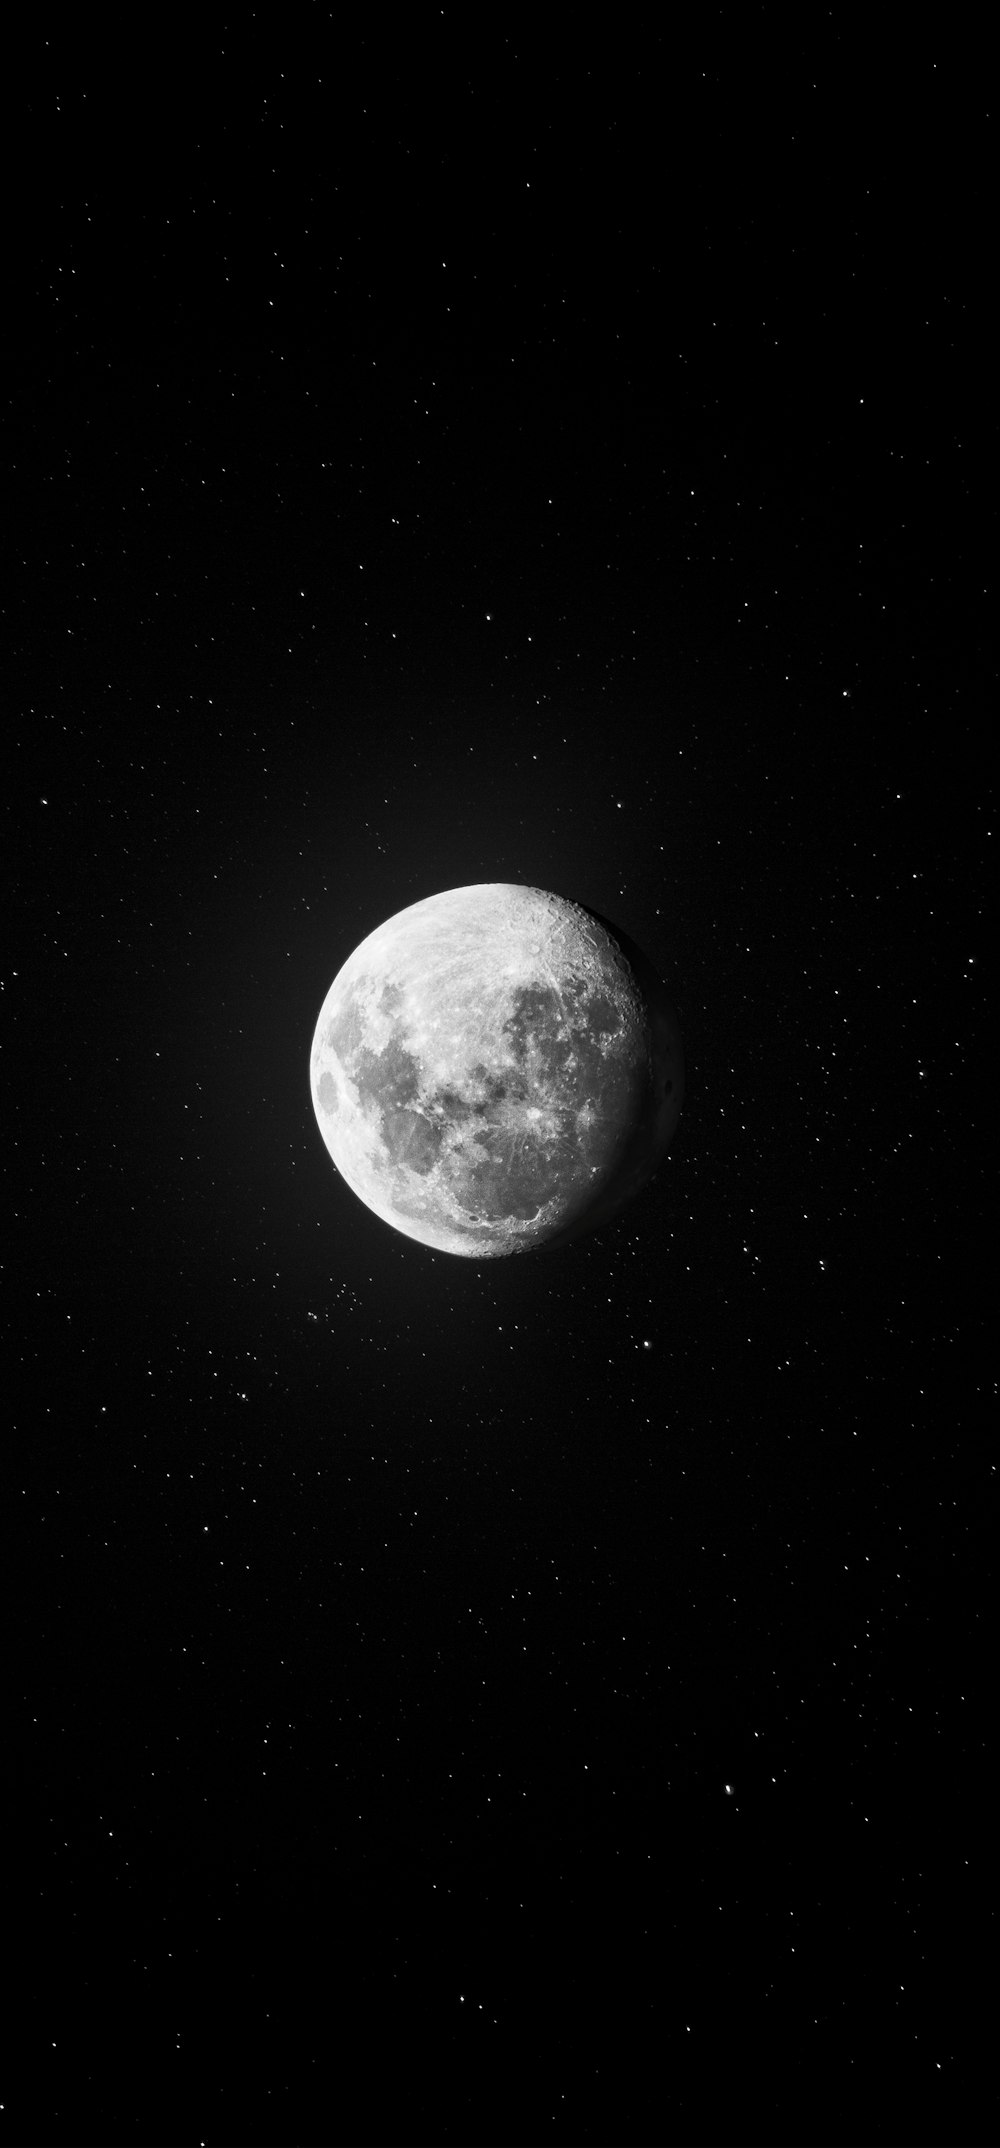 Mặt trăng là biểu tượng của sự lãng mạn và bí ẩn. Nó sáng lên cả bầu trời đêm và tạo nên một không gian đầy ma mị. Hãy xem bức ảnh liên quan đến mặt trăng để tận hưởng khoảnh khắc đầy cảm xúc đó.